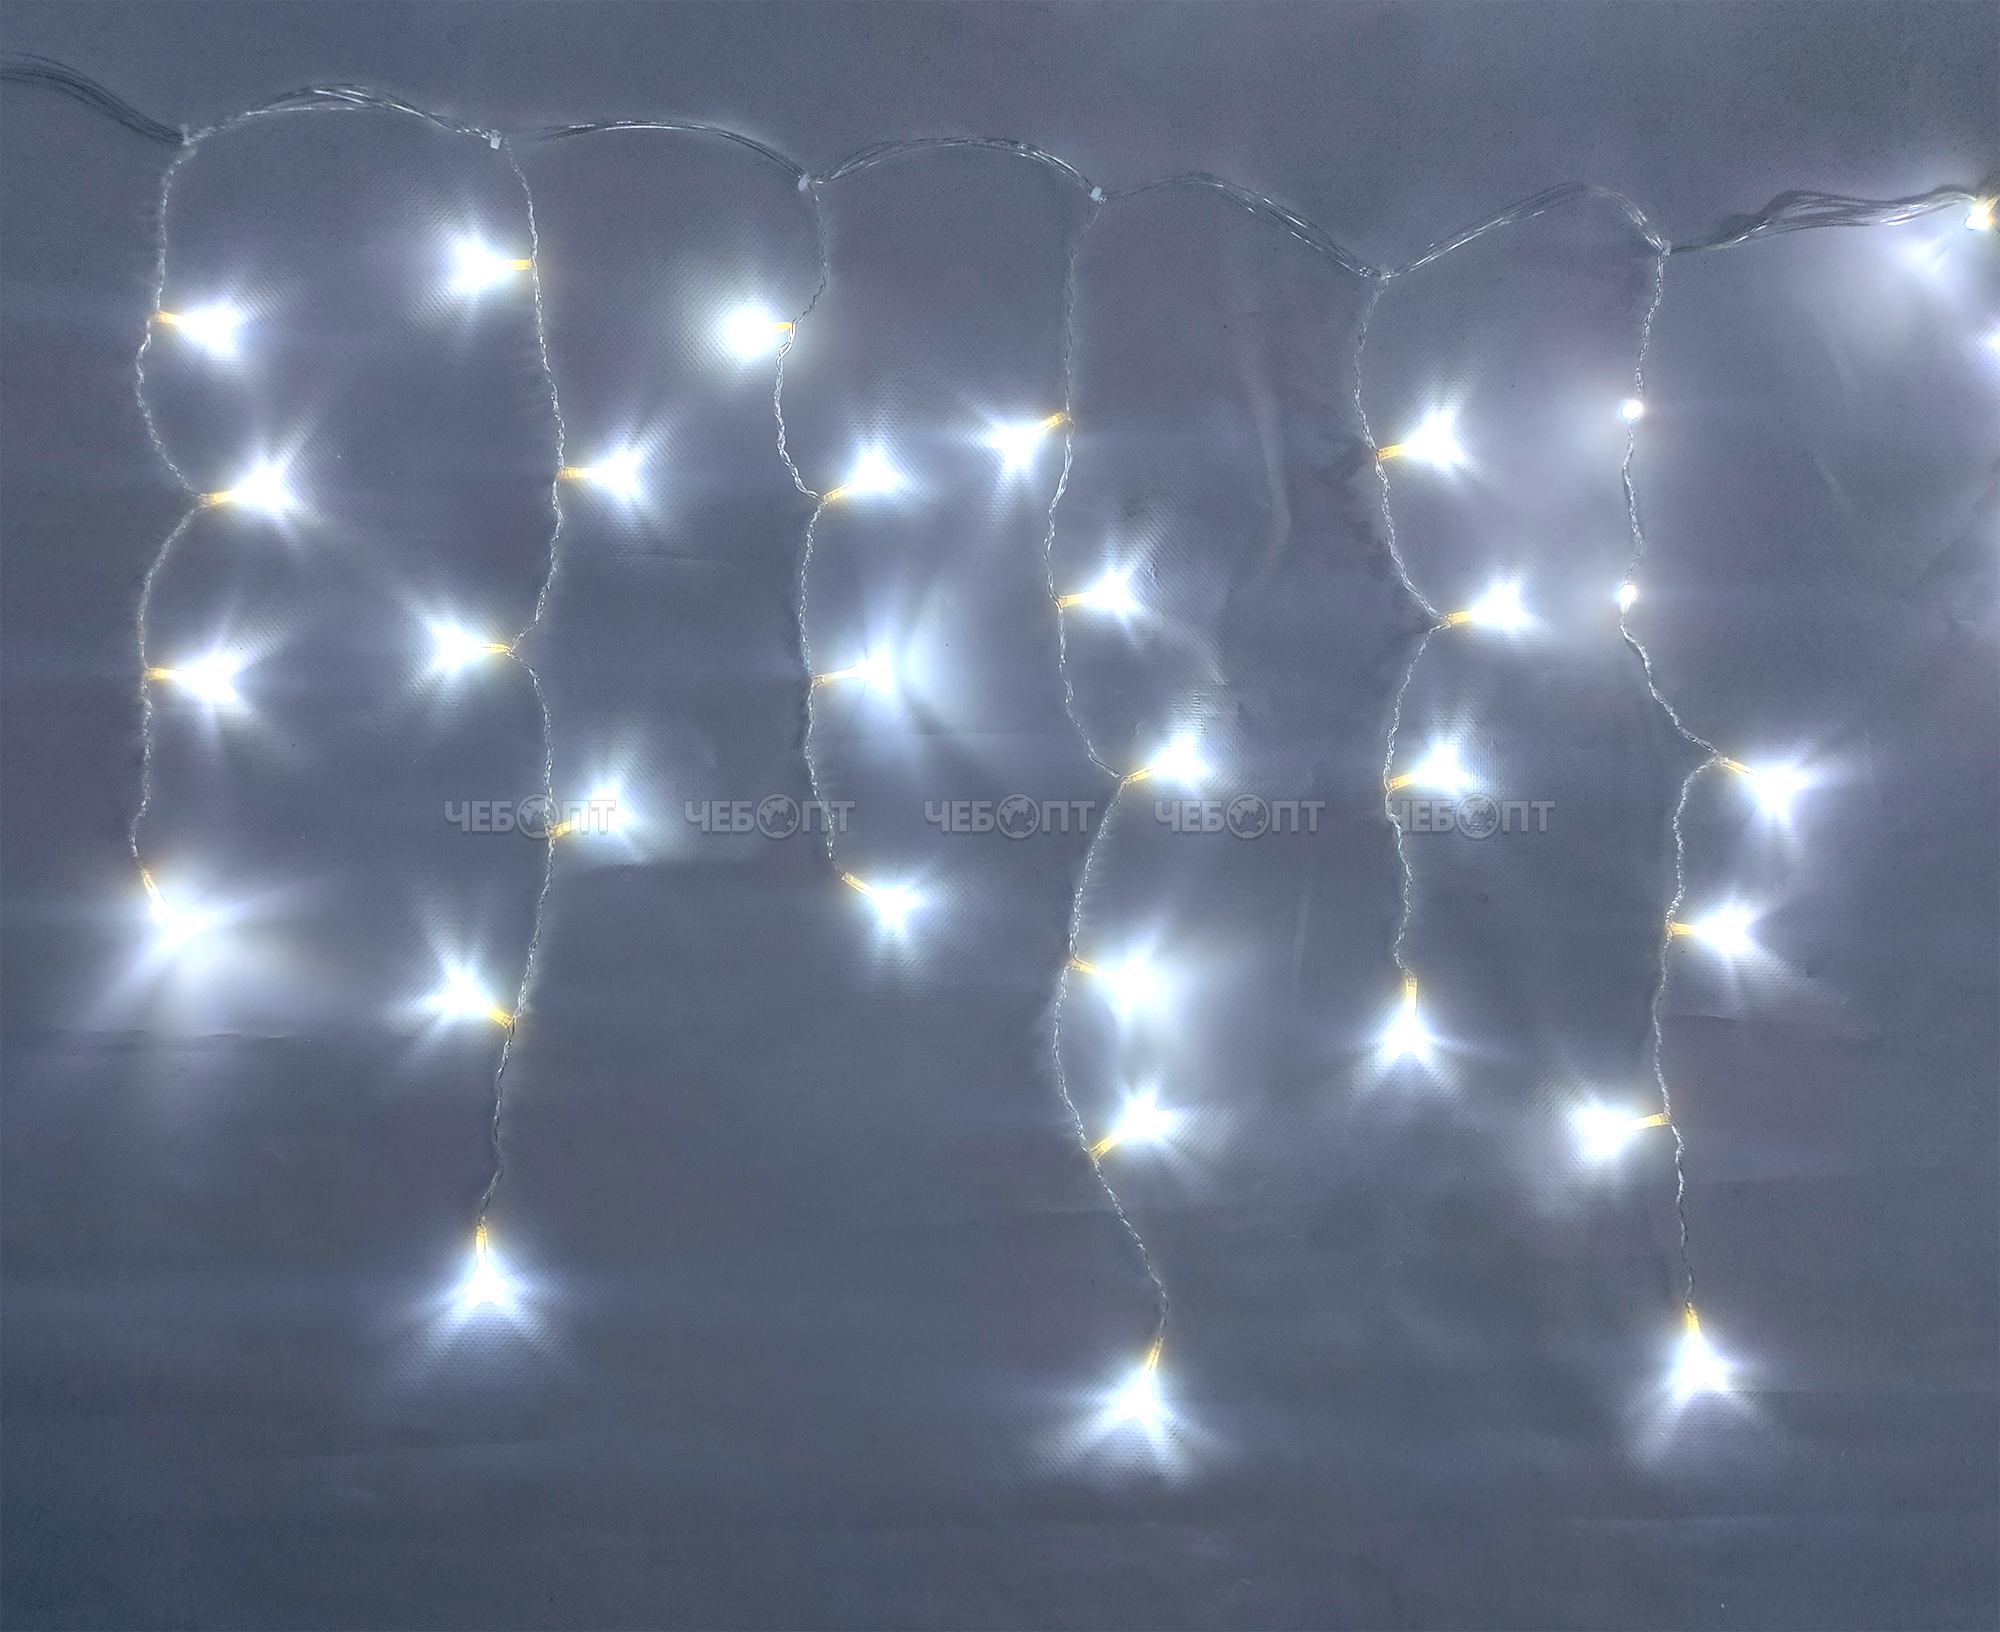 Электрические гирлянды БАХРОМА 100 ламп, свечение - белый, LED IP-54, 8 режимов мигания, прозрачный провод 3 м, арт. 183-279 [8]. ЧЕБОПТ.